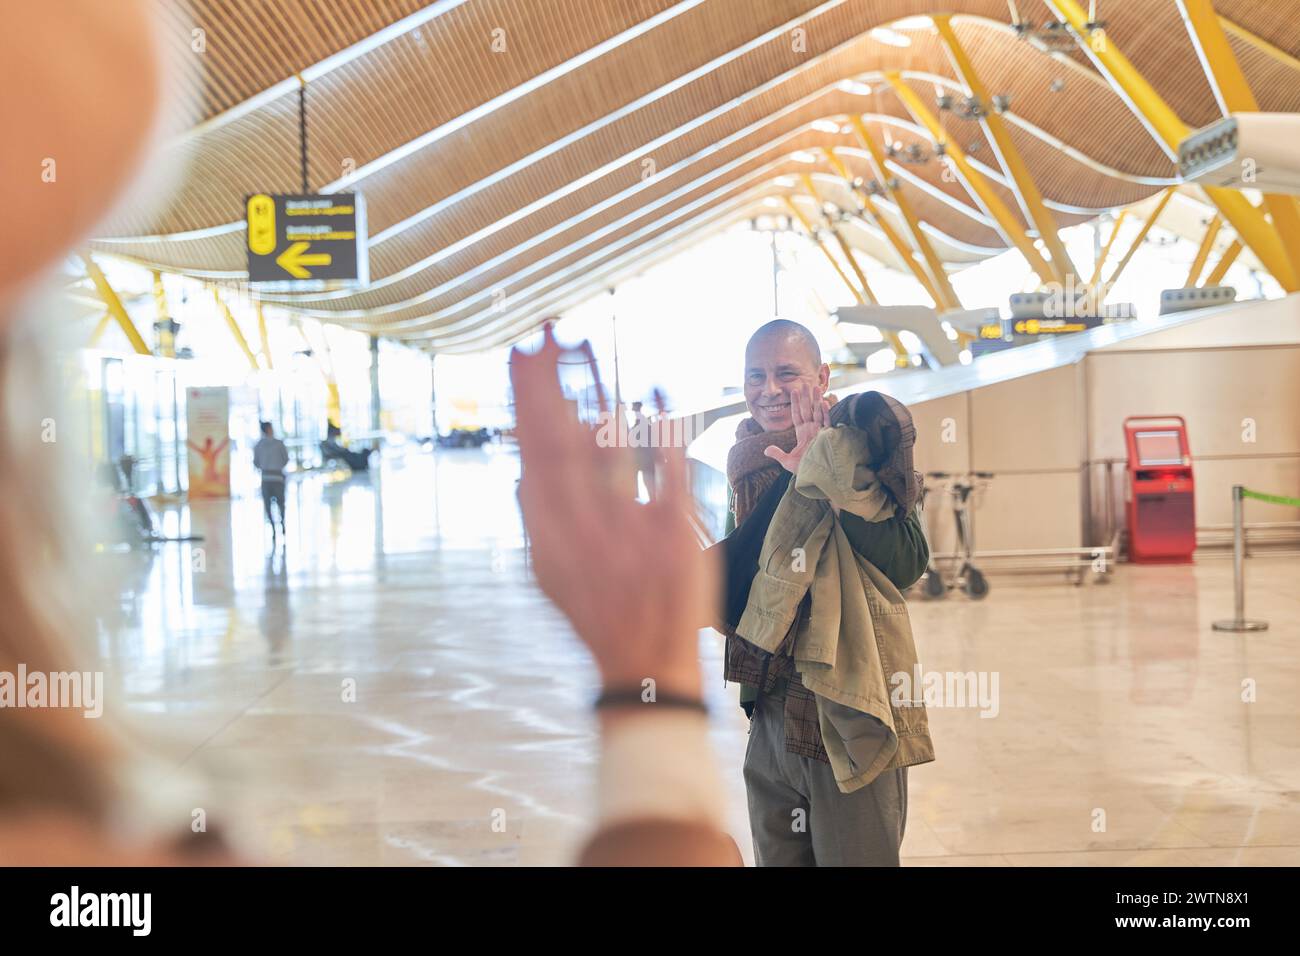 Ein paar verabschieden sich am Flughafen. Mann, der sich von einer Frau im Vordergrund verabschiedet, ohne Fokus. Stockfoto